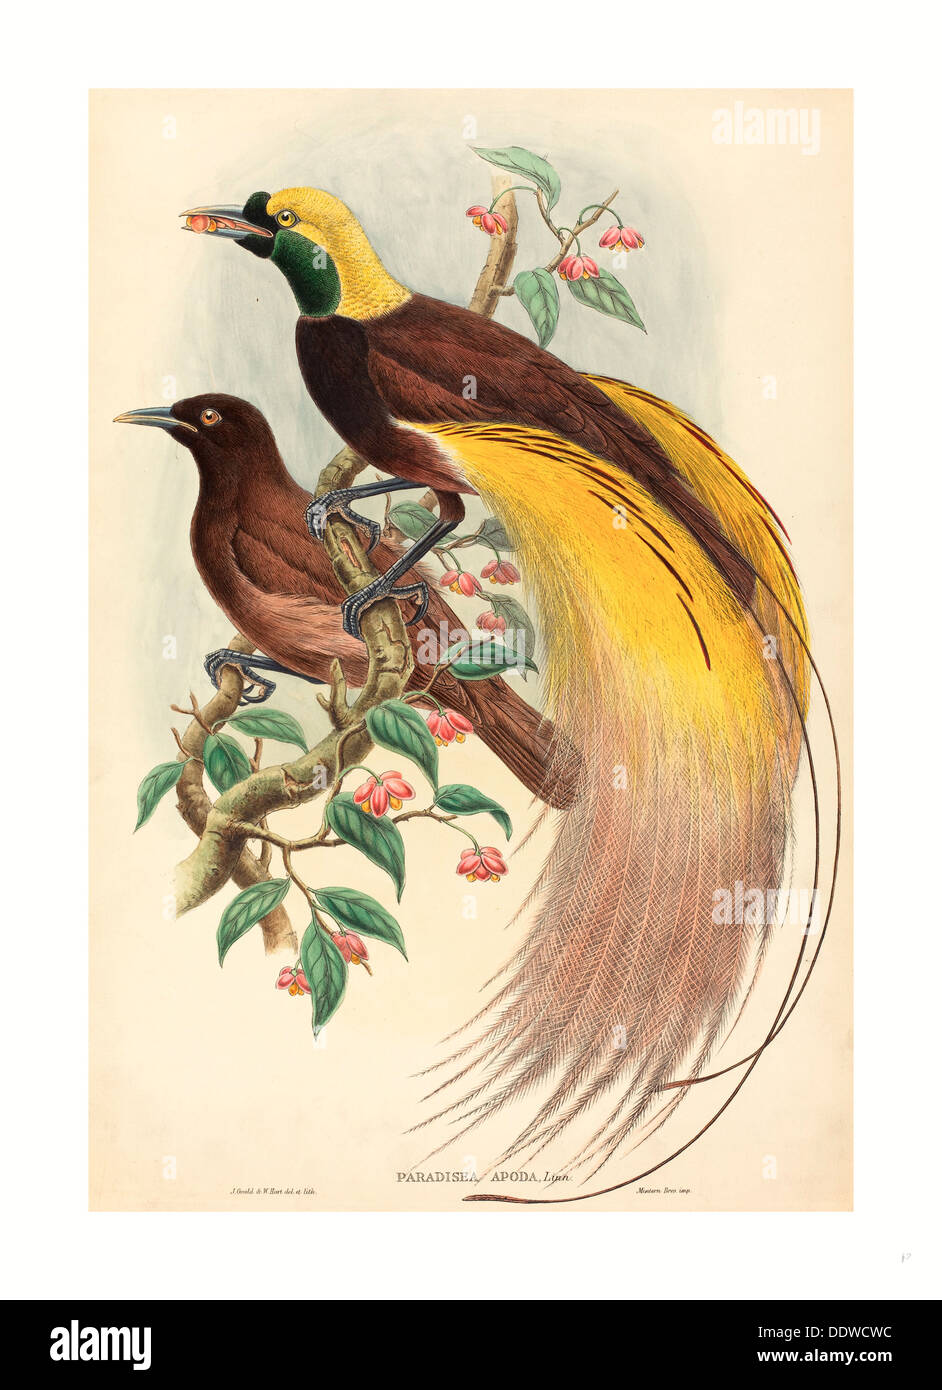 John Gould et W. Hart (British, 1804 - 1881 ), les Oiseaux du Paradis (Paradisea apoda), publié 1875, 1888 Lithographie colorée à la main Banque D'Images